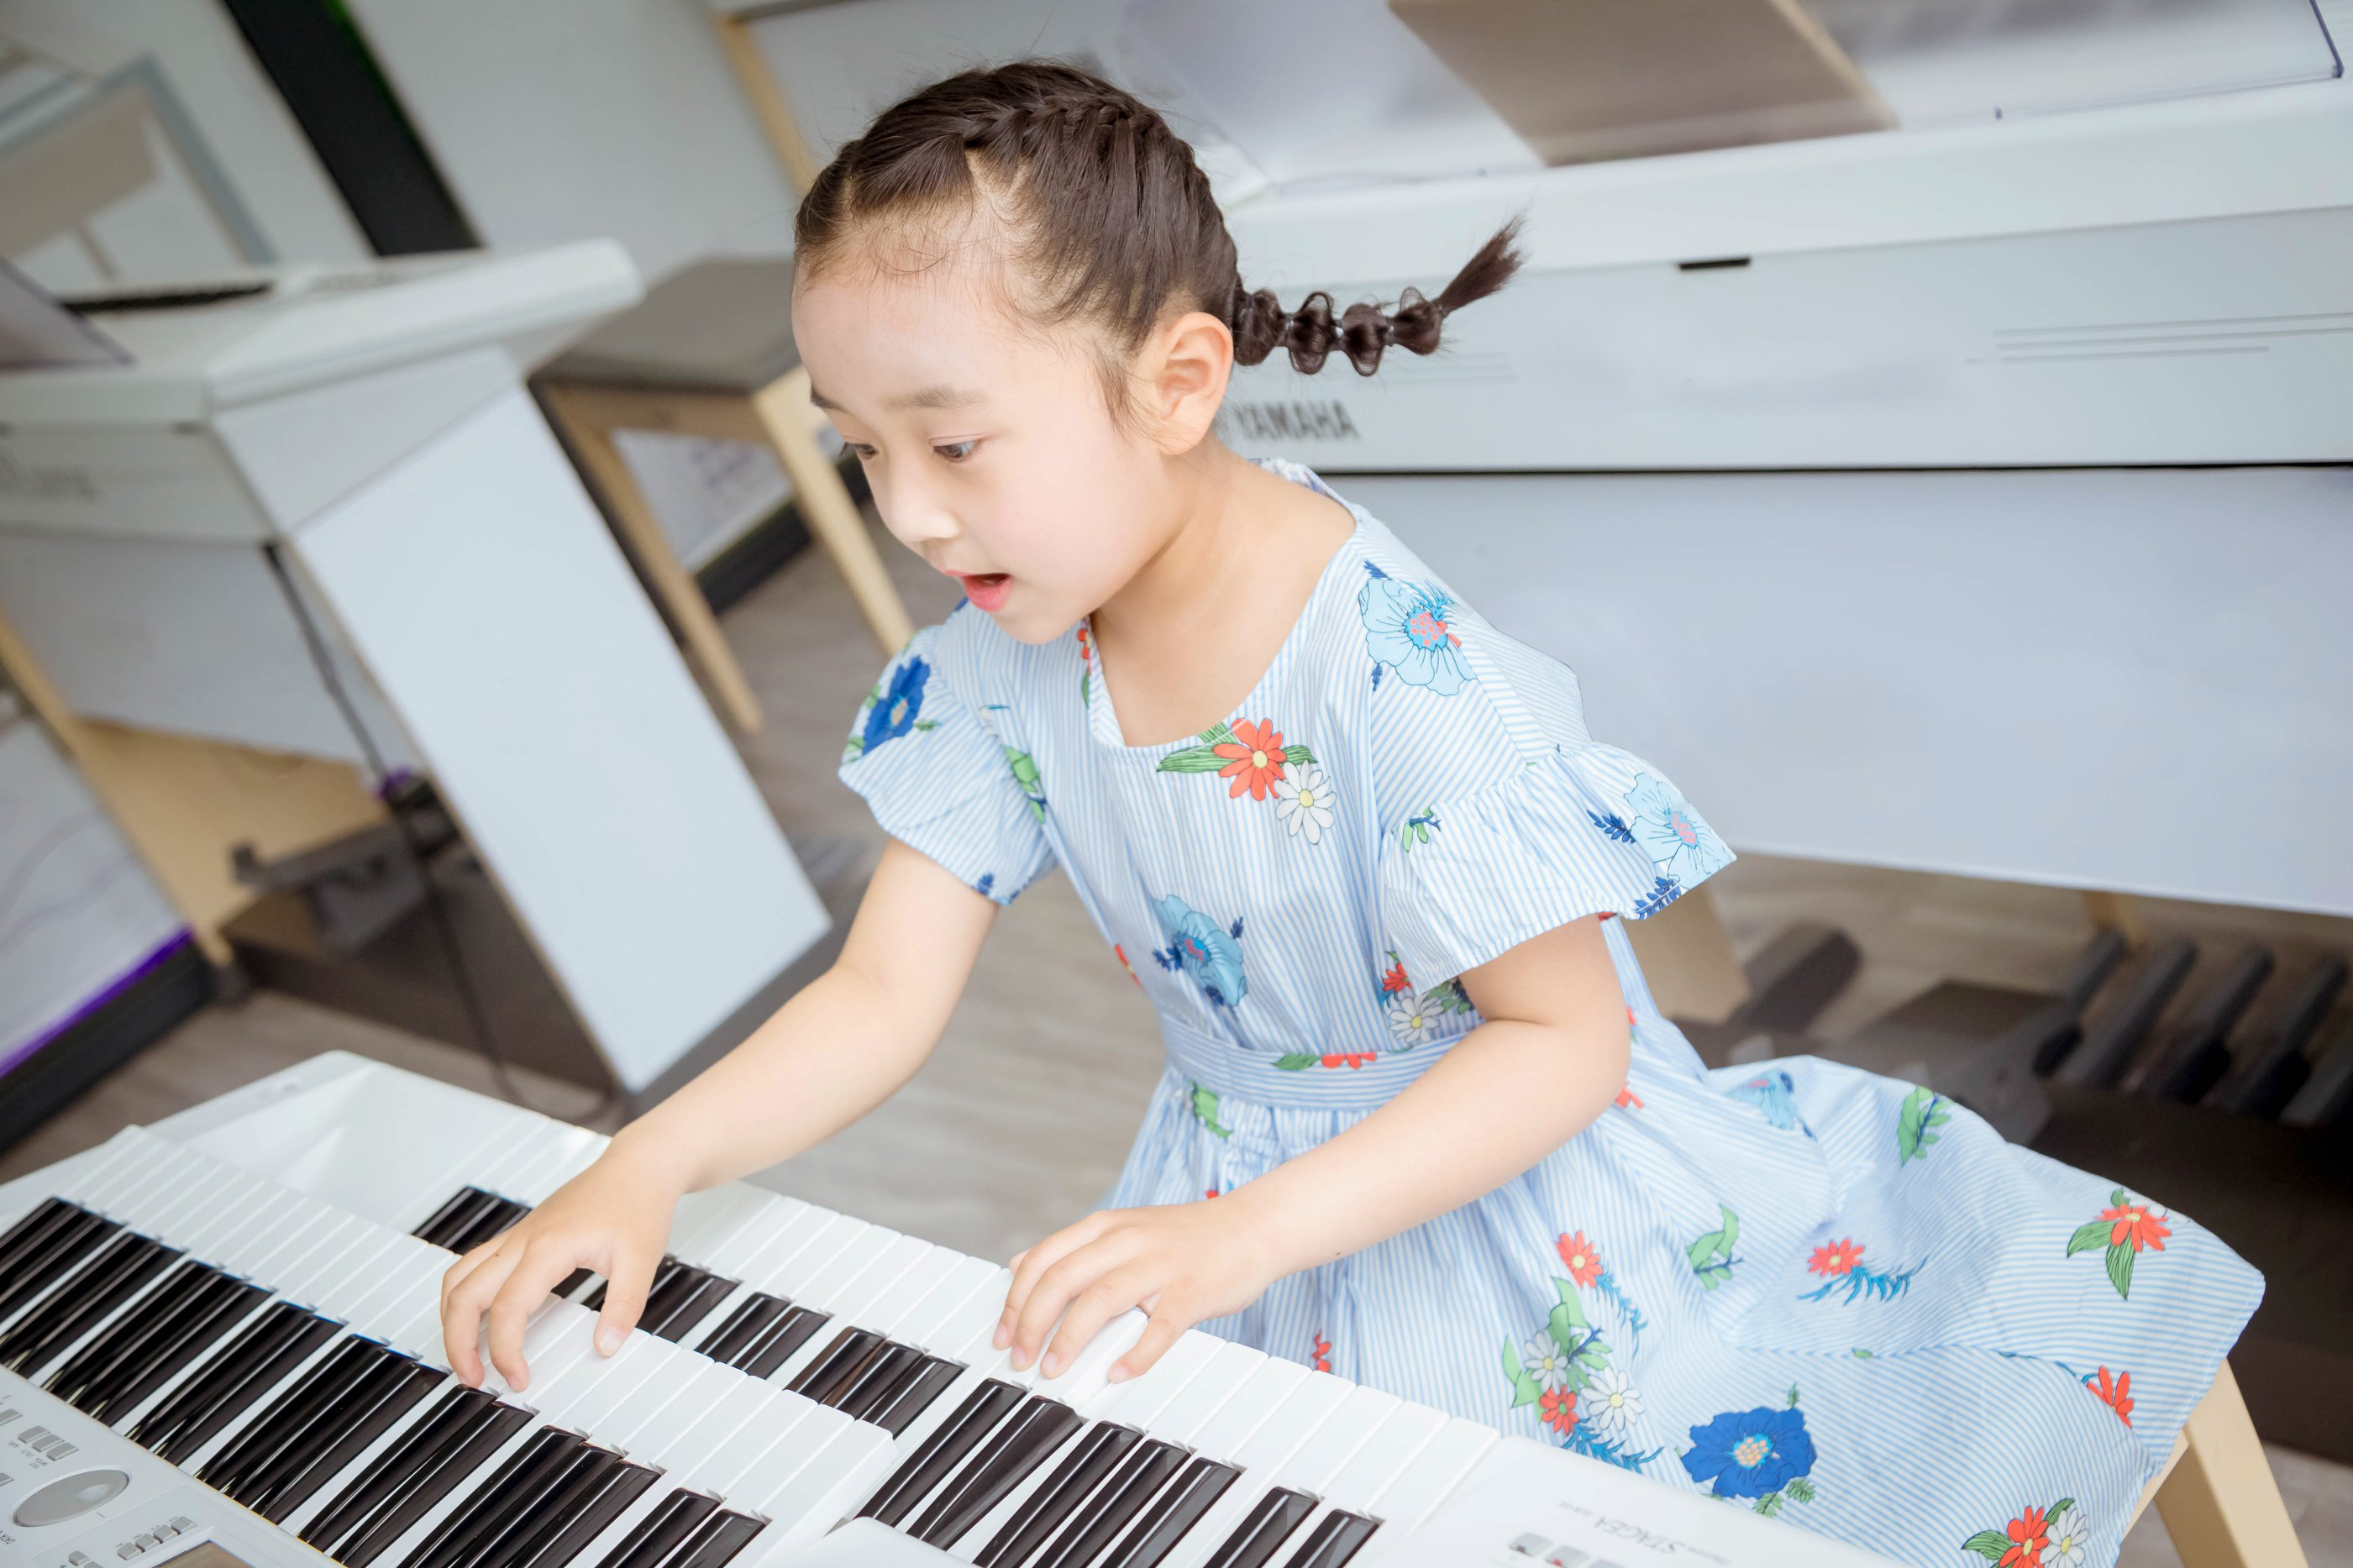 孩子学琴陪练,钢琴陪练,家长陪练 . 孩子学琴，家长有陪练的必要吗？